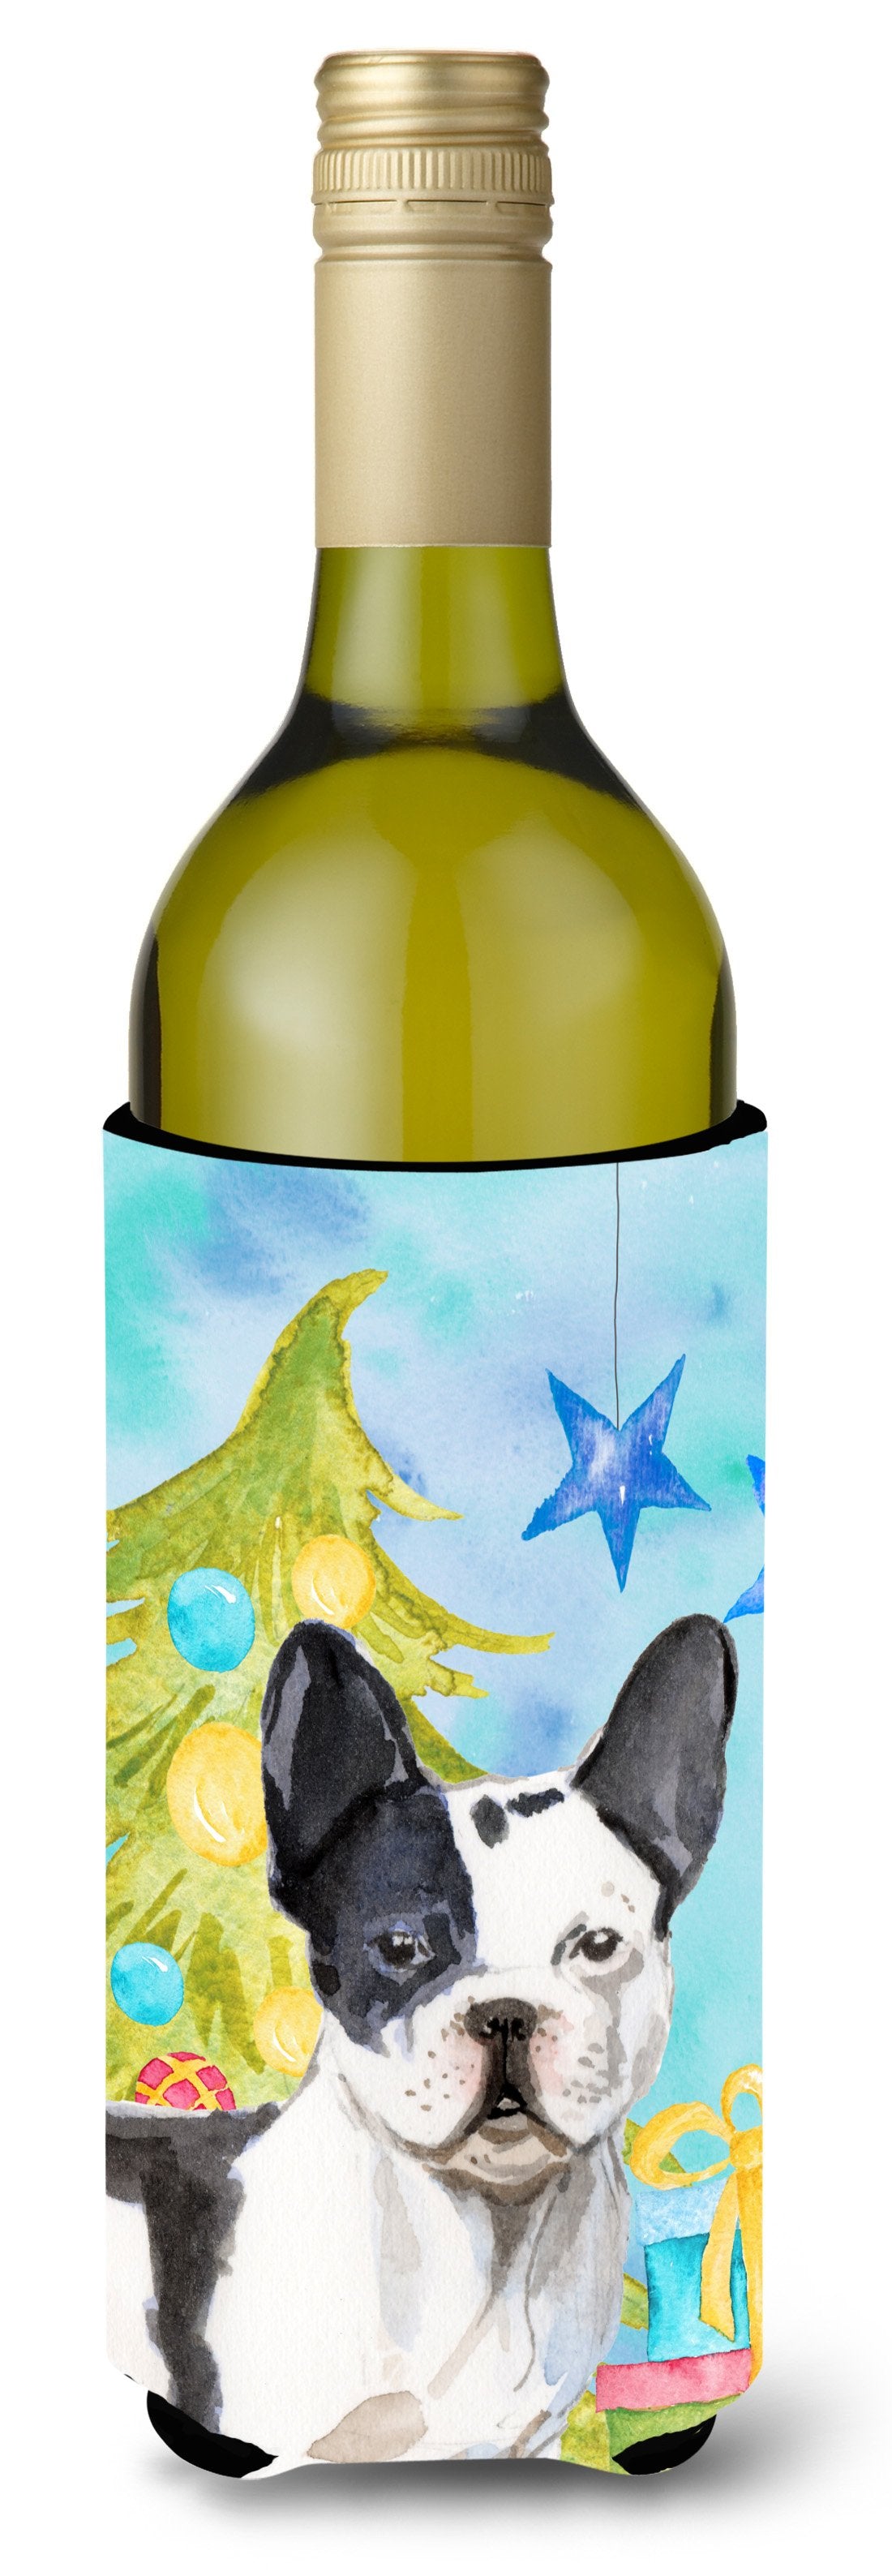 Black White French Bulldog Christmas Wine Bottle Beverge Insulator Hugger BB9407LITERK by Caroline's Treasures